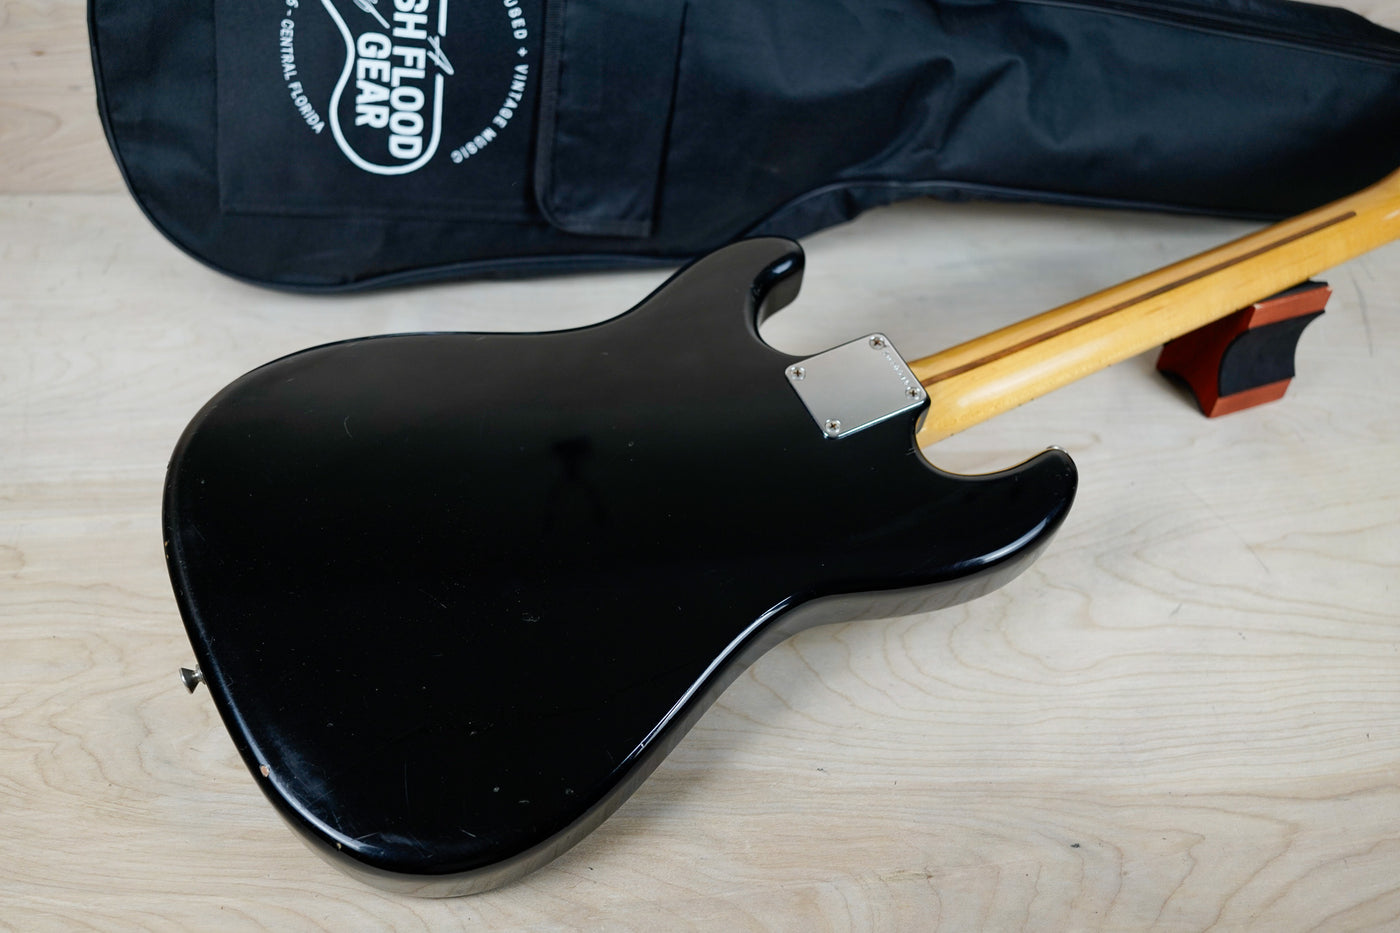 Squier Bullet 1 MIJ 1984 Black Vintage Fender Made in Japan w/ Bag